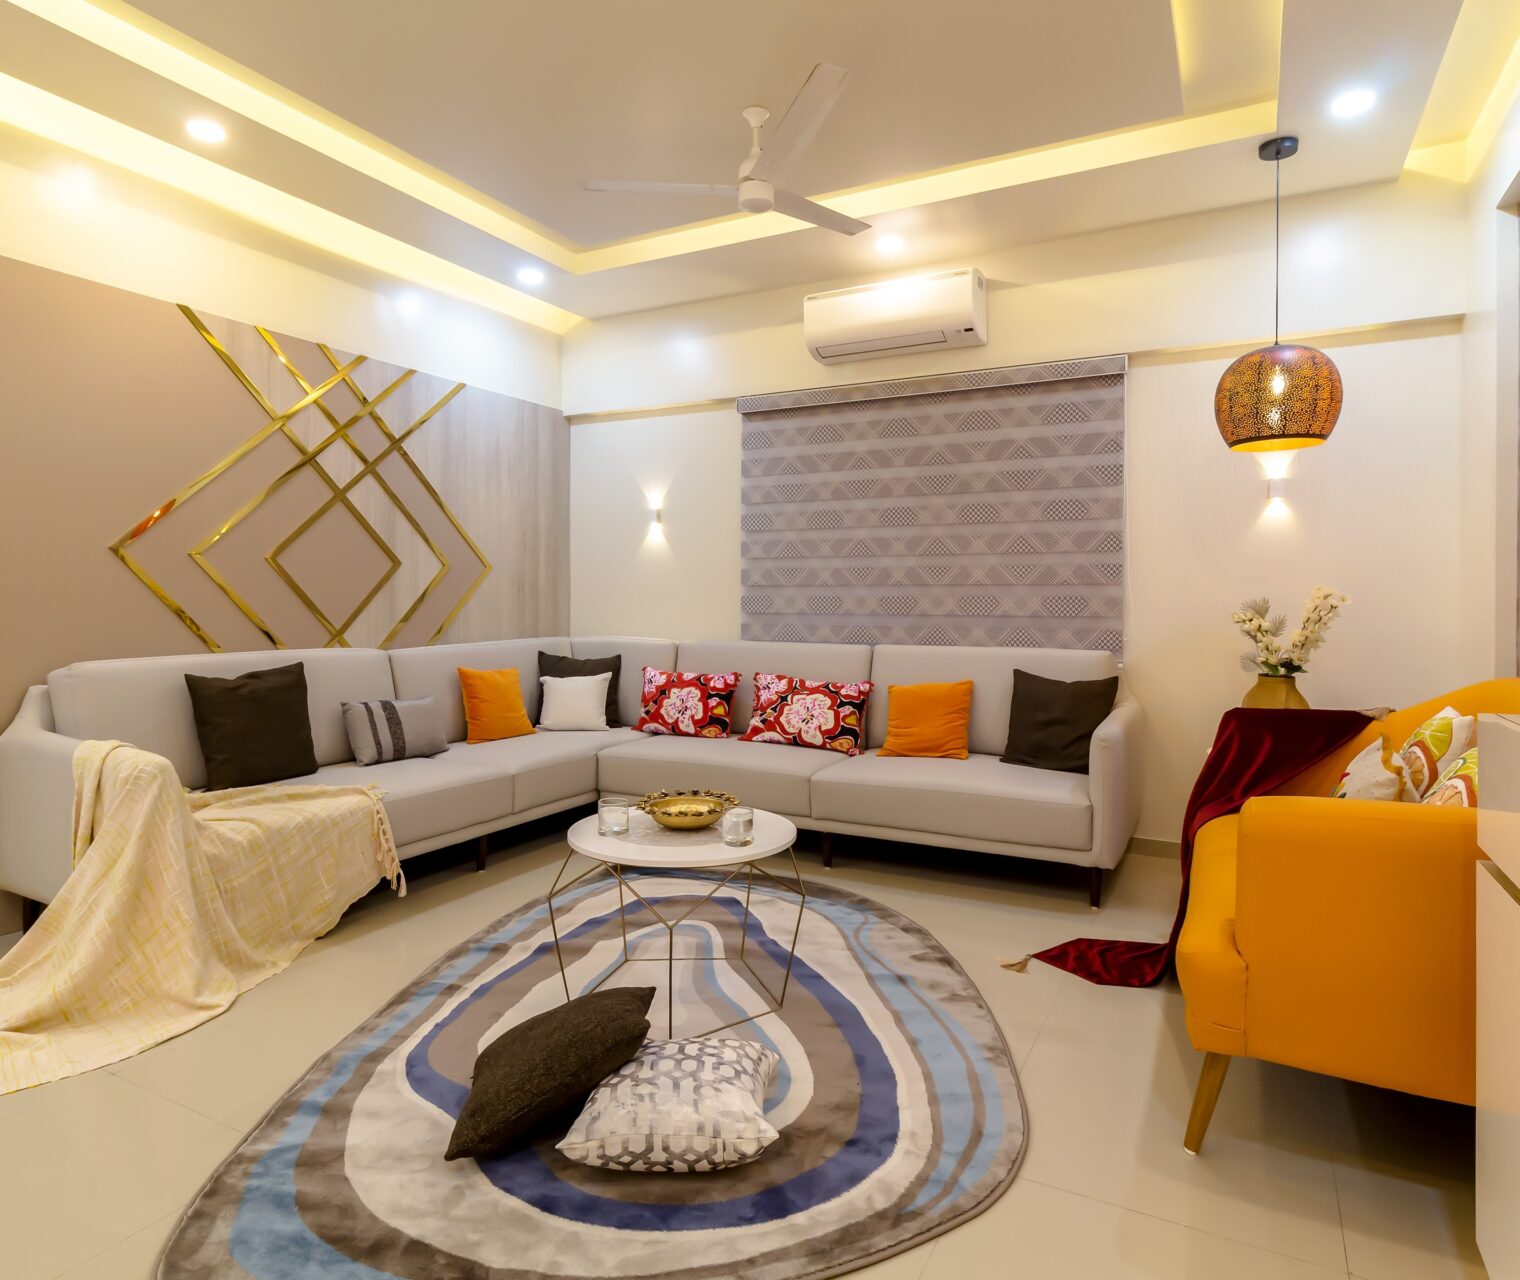 Residential Interior Designing for Mr. Desai